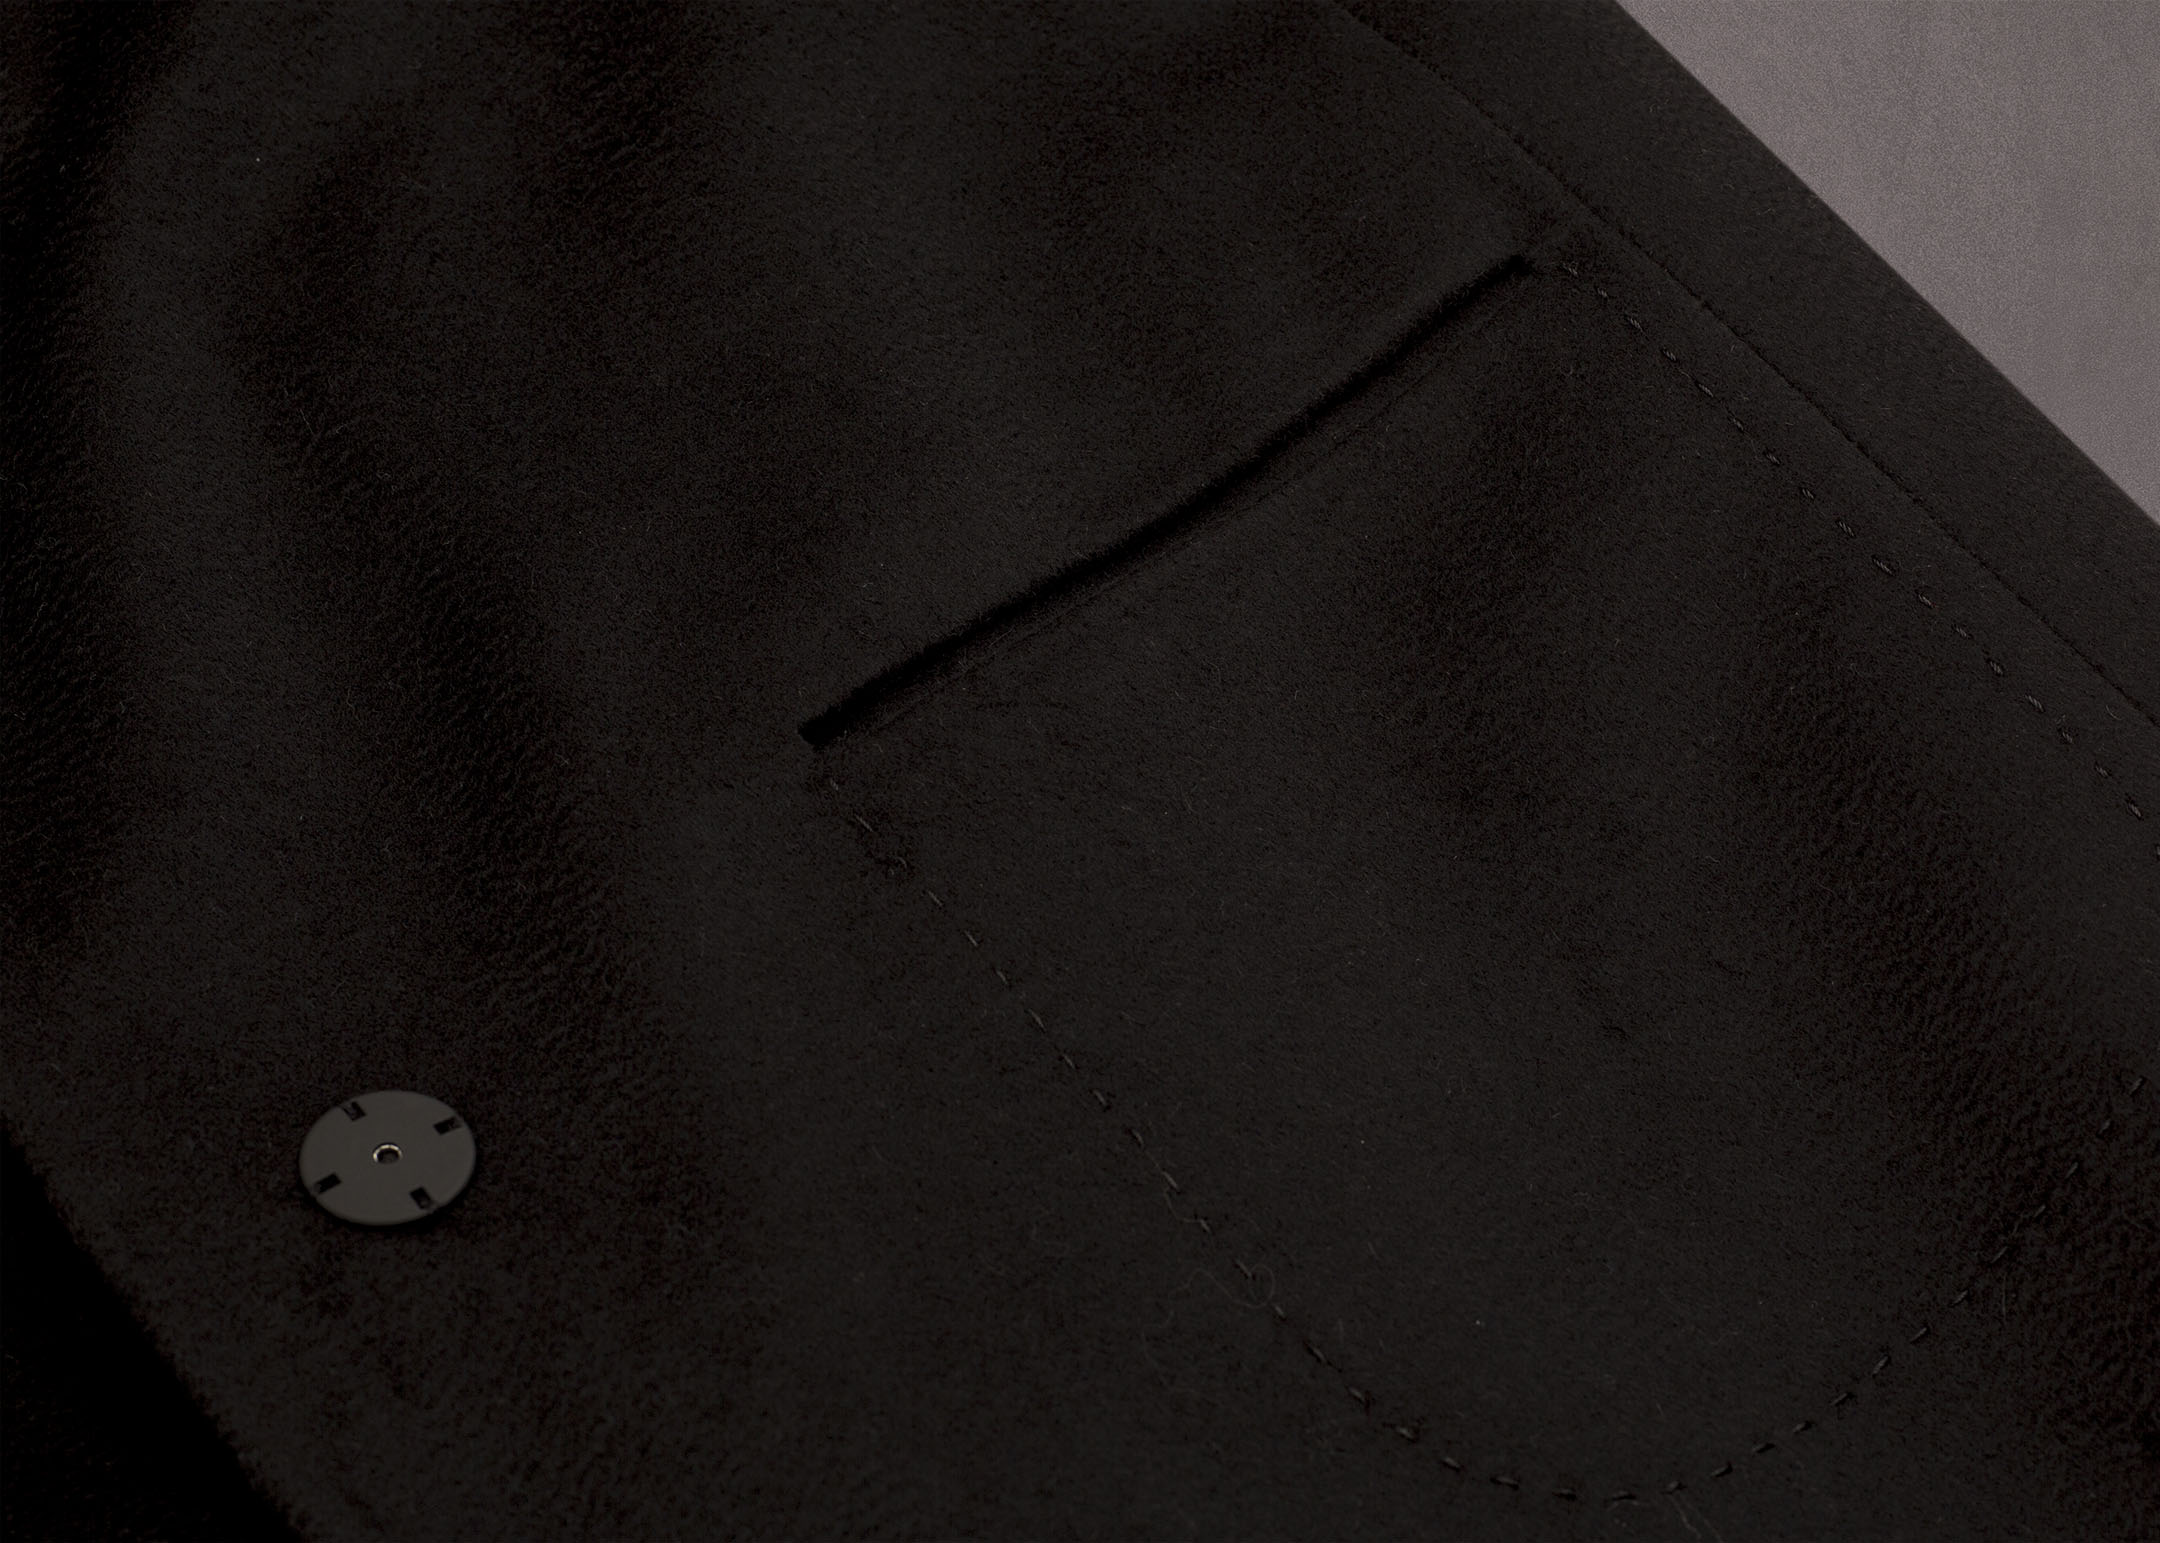 Meldes De Luxe – Manteau laine large col tailleur – Noir – Réf: 371-1-01